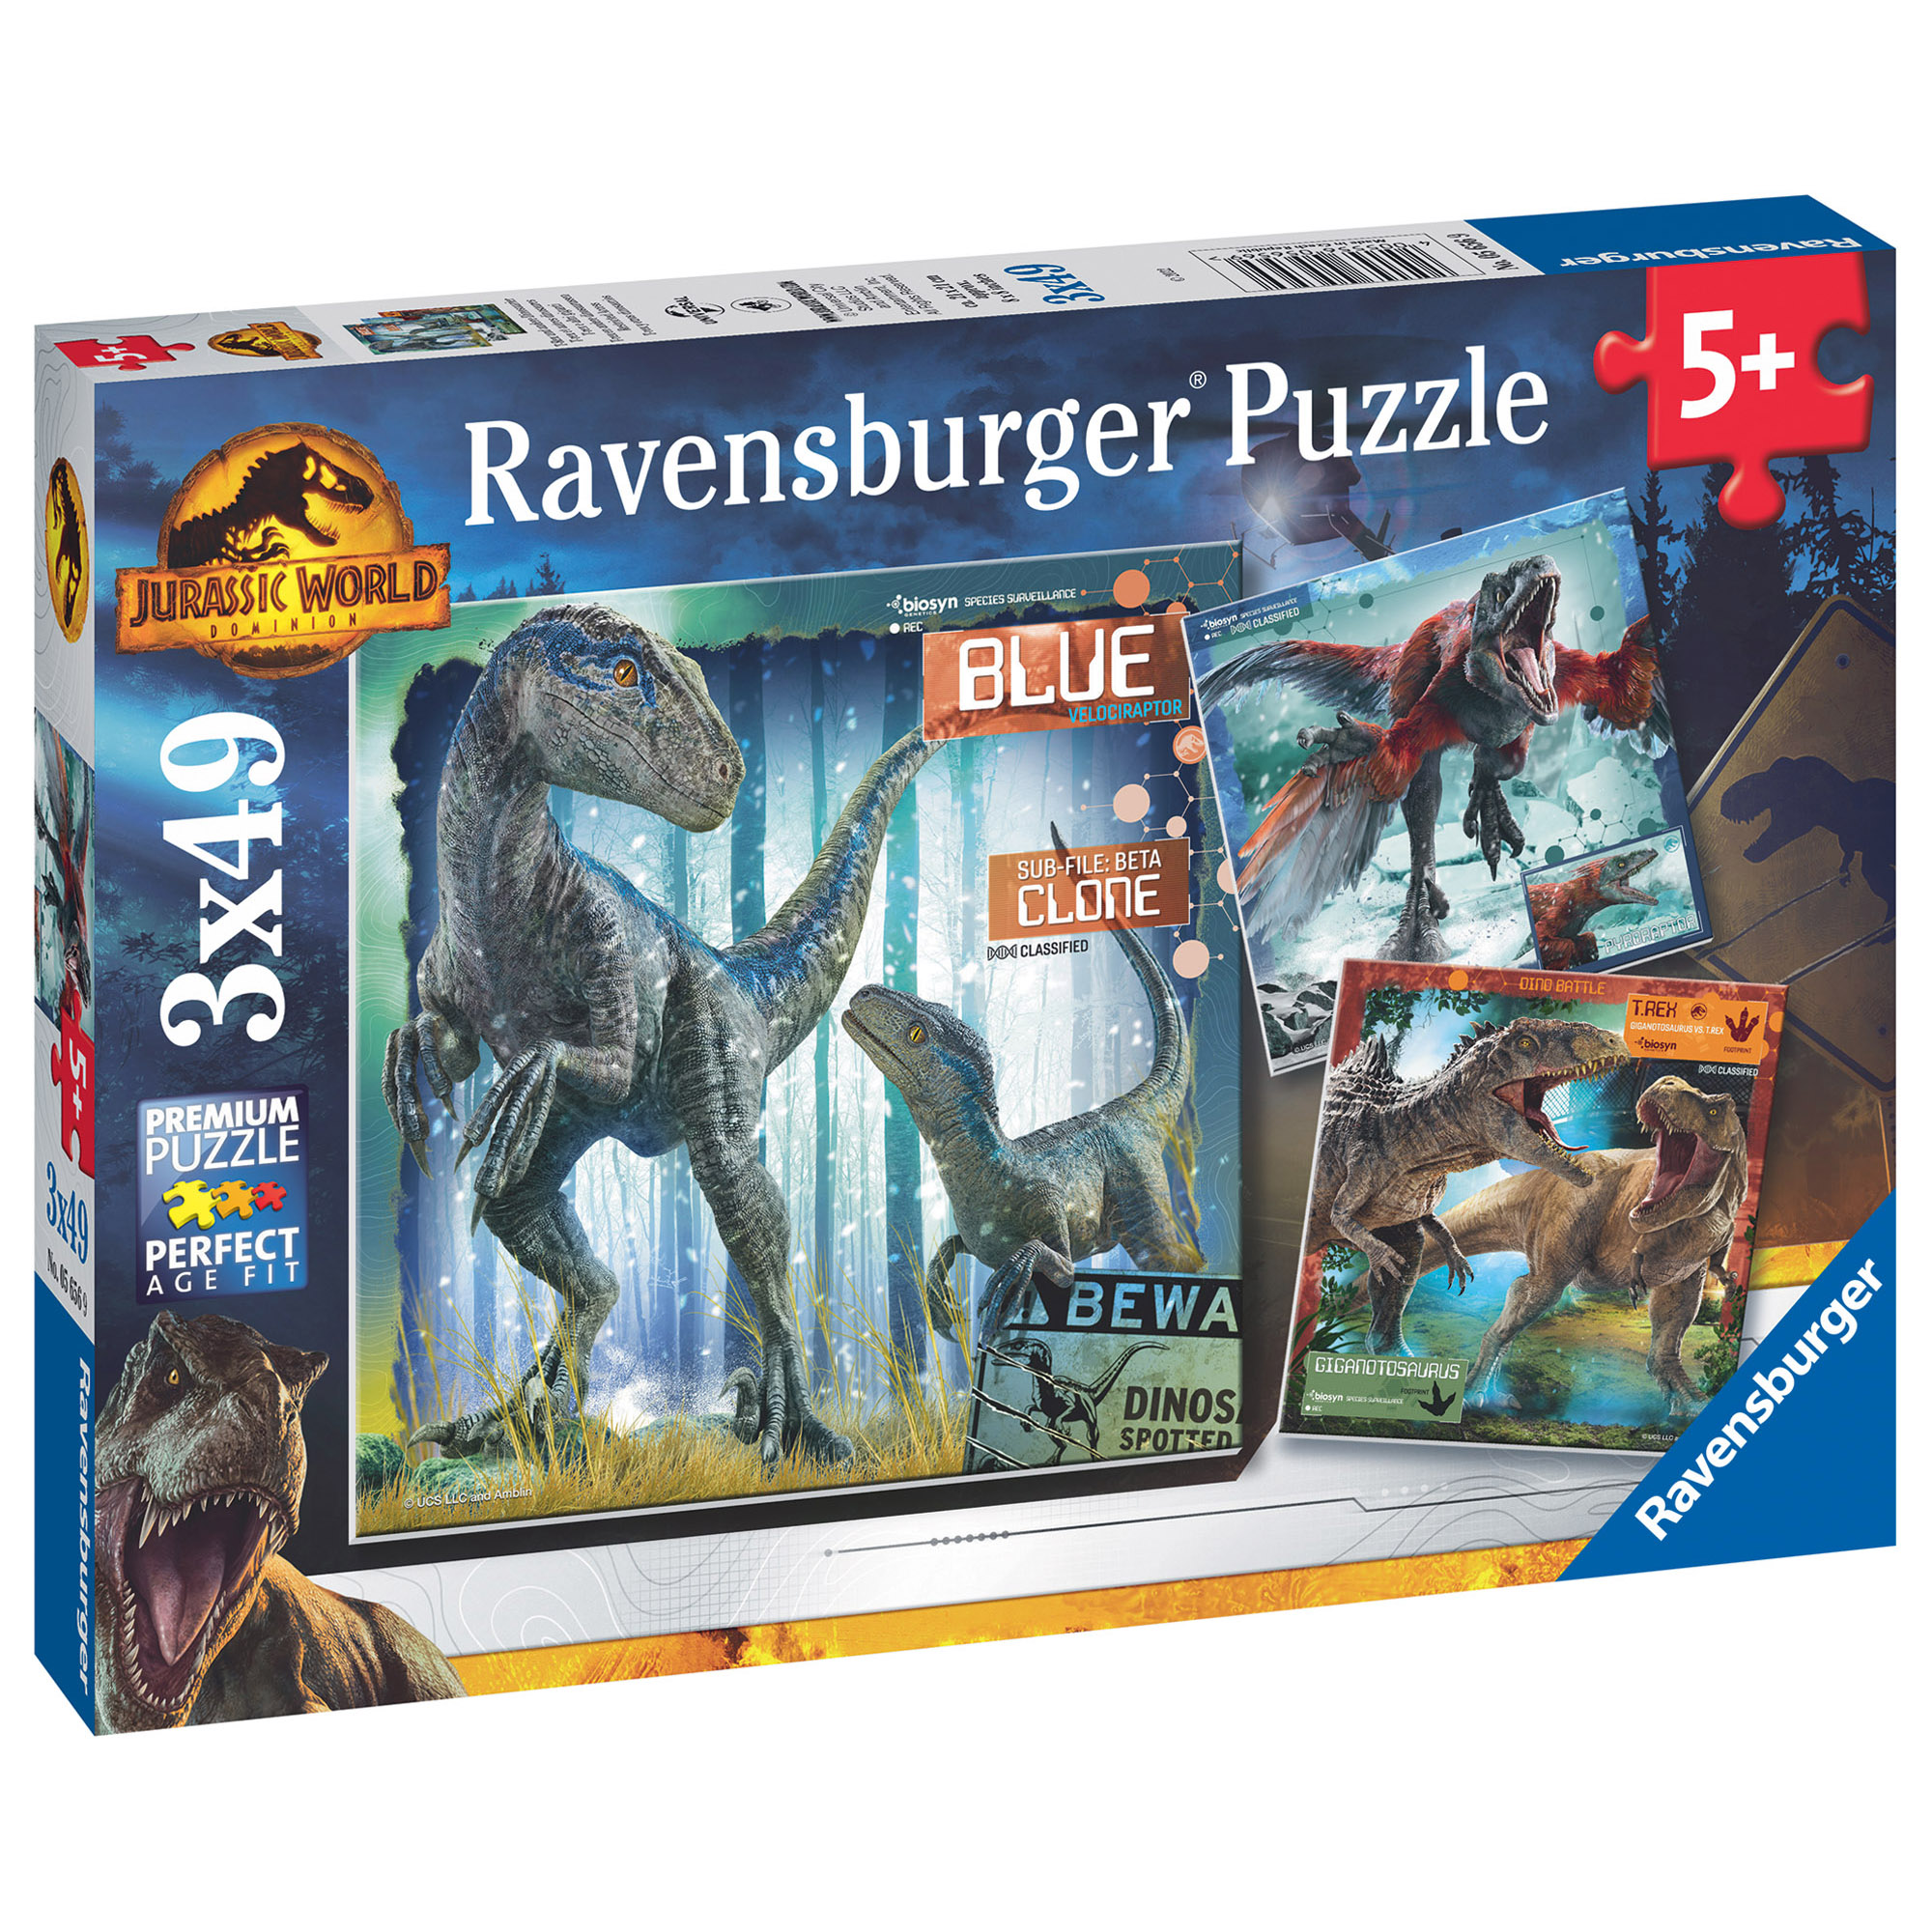 Ravensburger - puzzle jurassic world, collezione 3x49, 3 puzzle da 49 pezzi, età raccomandata 5+ anni - Jurassic World, RAVENSBURGER